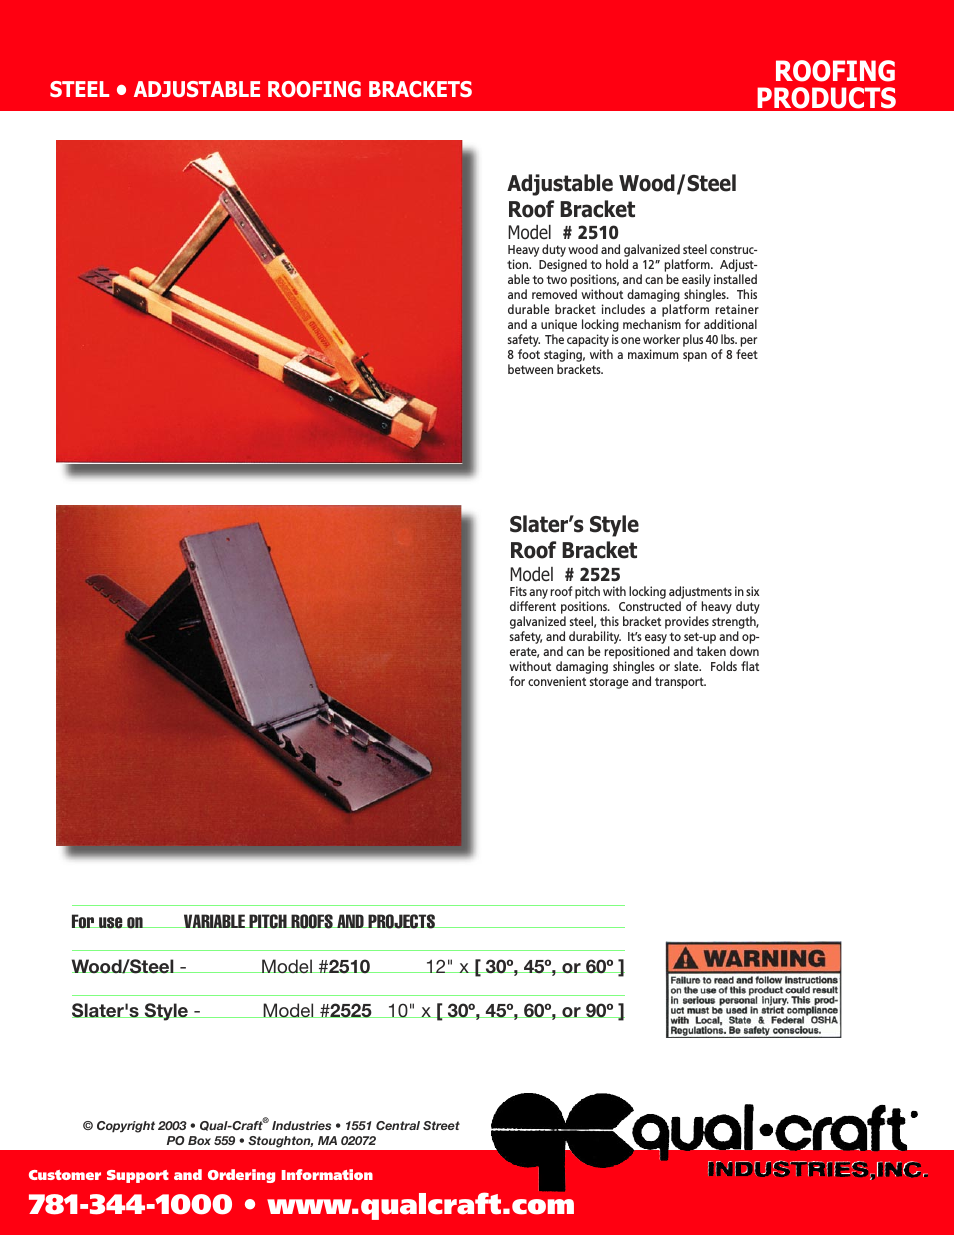 Adjustable Wood/Steel Roof Bracket